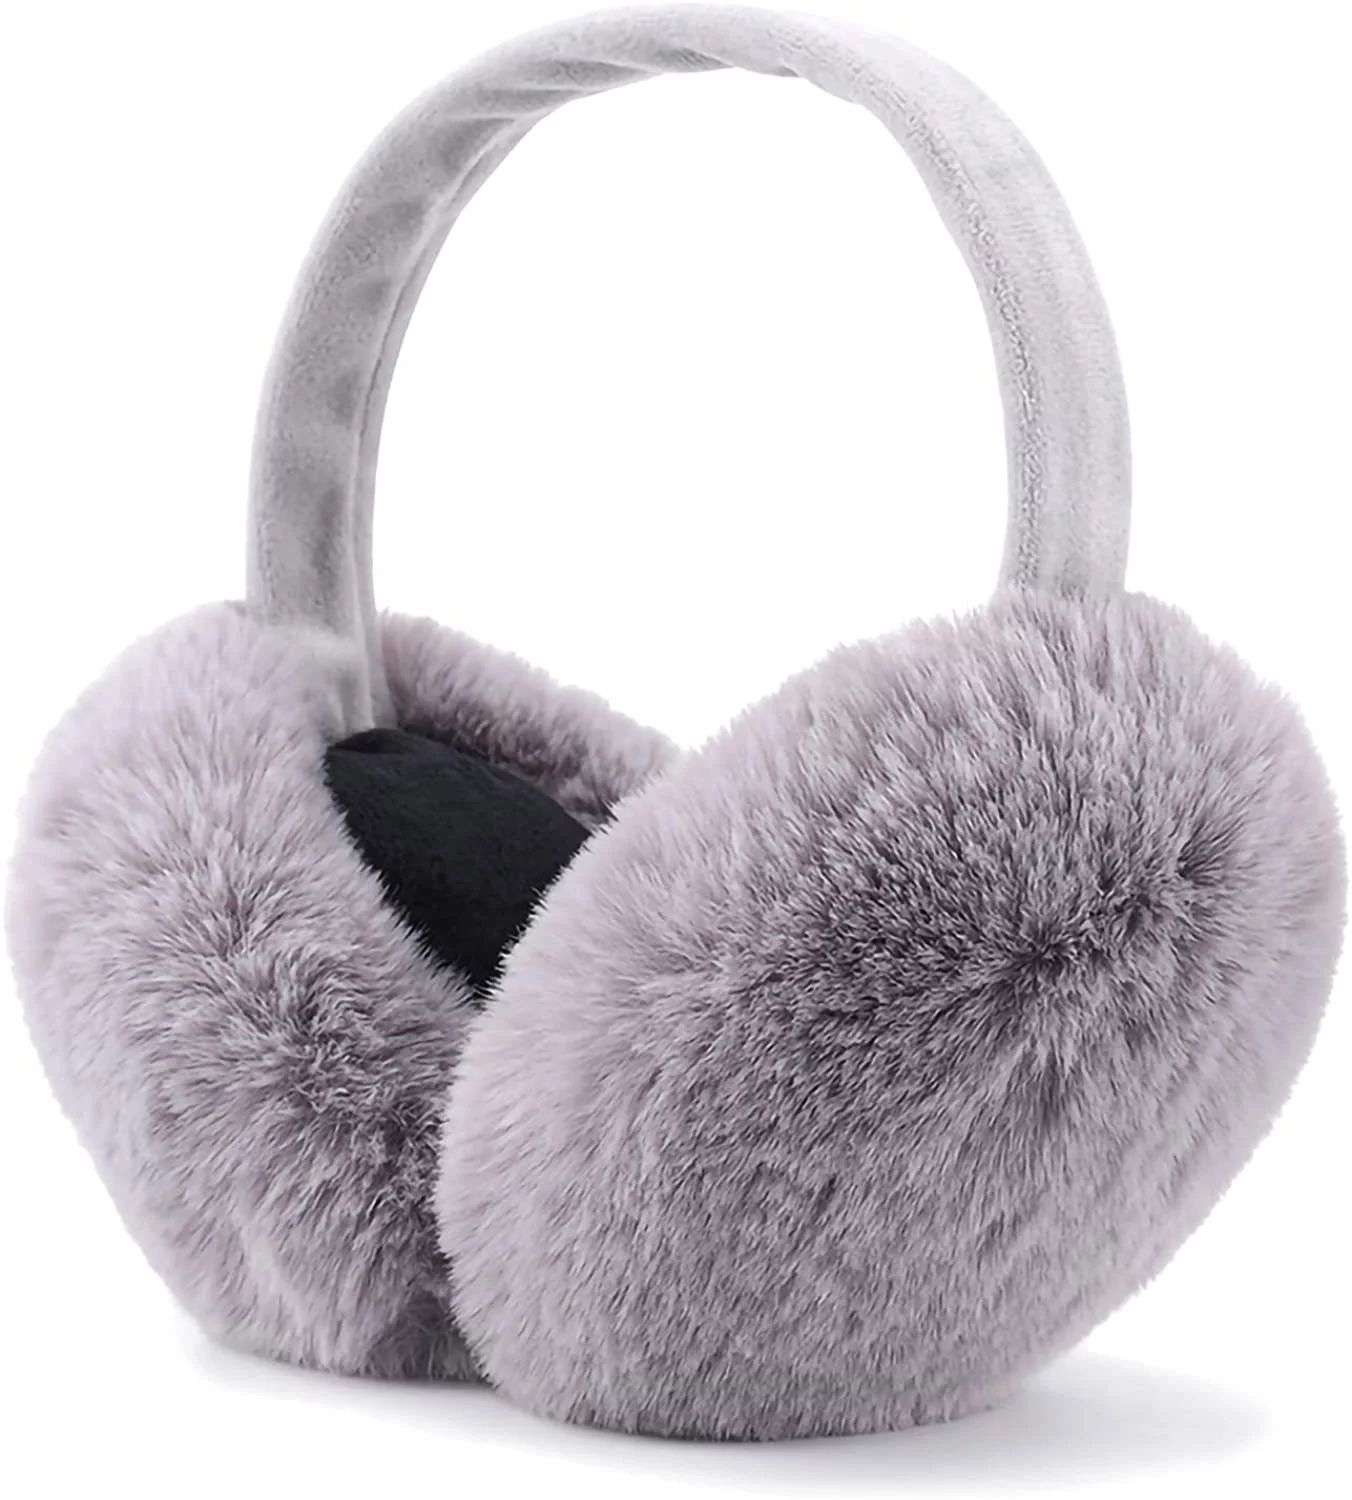 Winter Ear muffs Faux Fur Warm Earmuffs Cute Foldable Outdoor Ear Warmers For Women Girls - Walma... | Walmart (US)